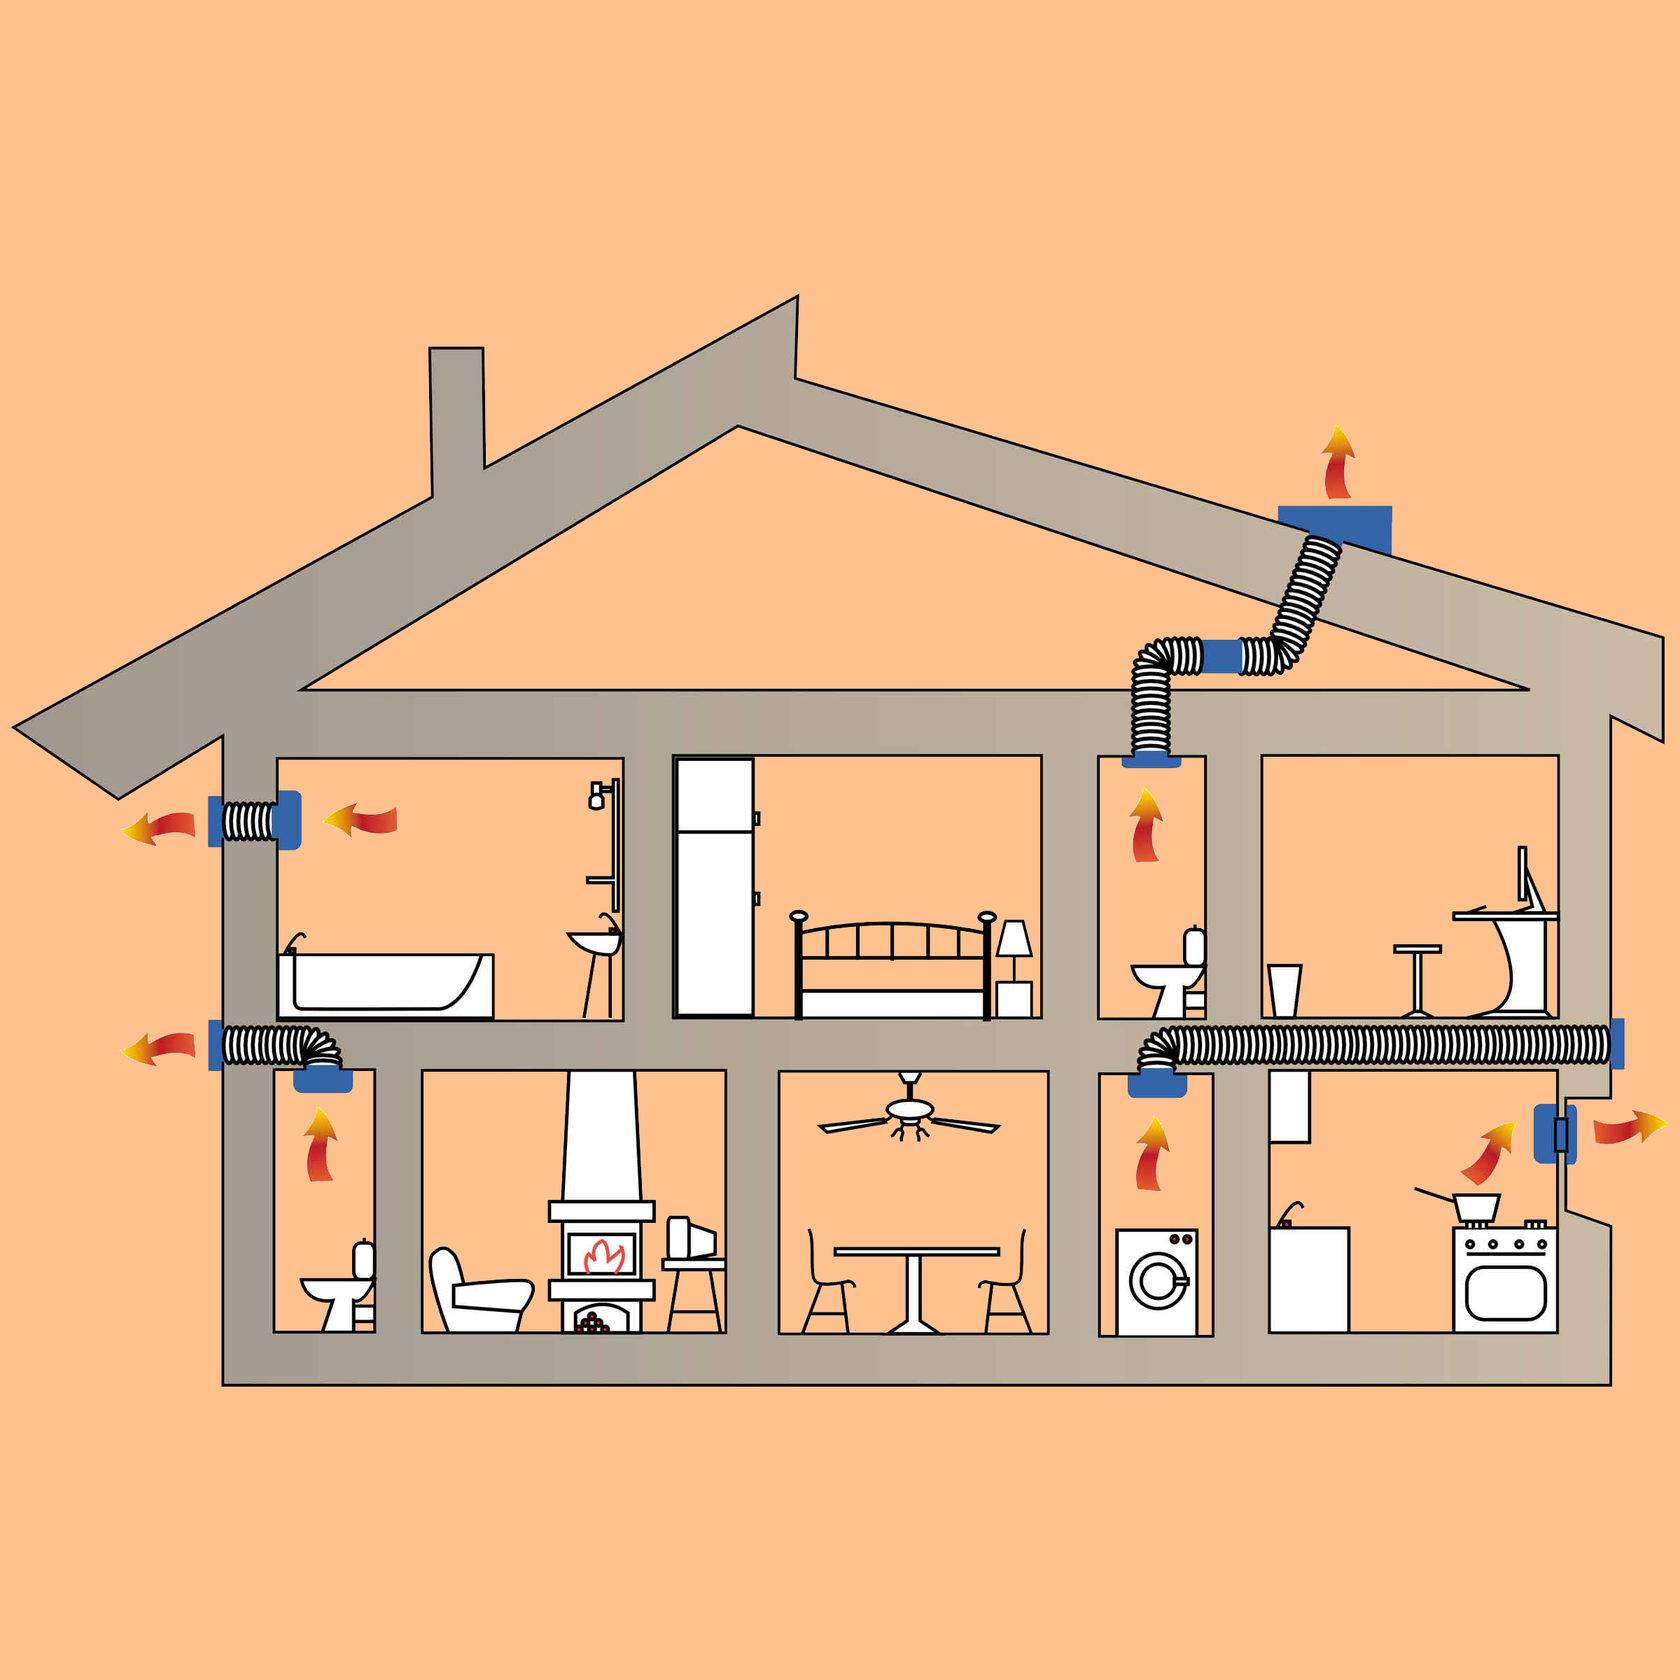 Требования к вентиляции с газовыми плитами и котлами: схемы, снипы, установка